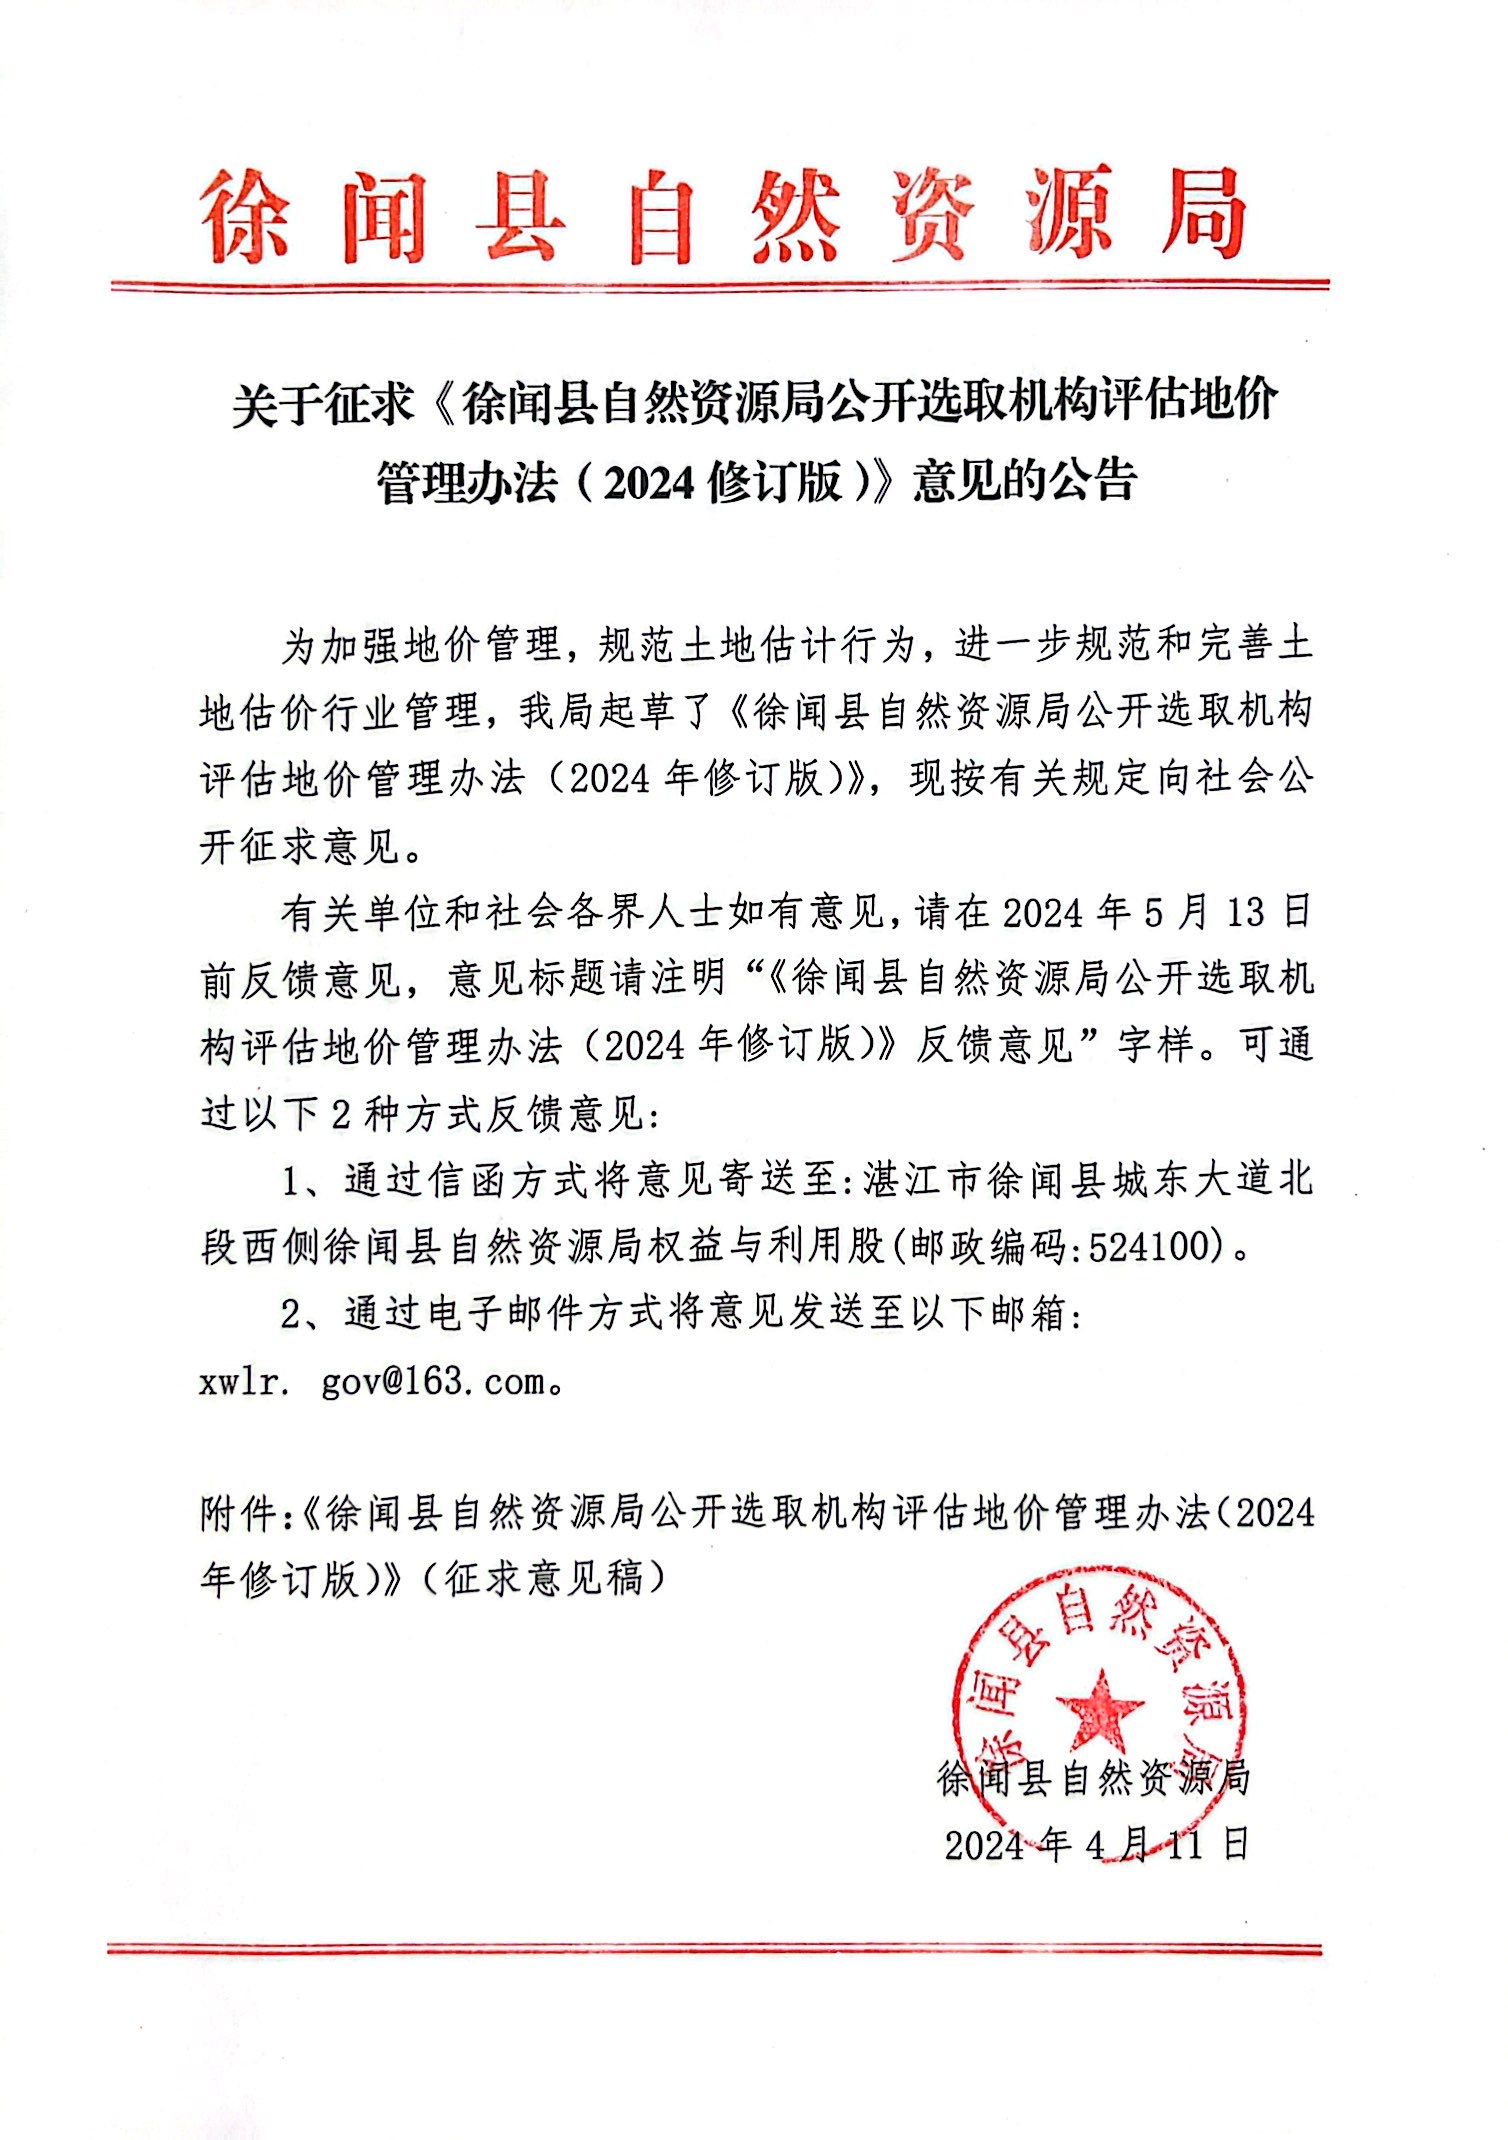 关于征求《徐闻县自然资源局公开选取机构评估地价管理办法（2024修订版）》意见的公告.jpg